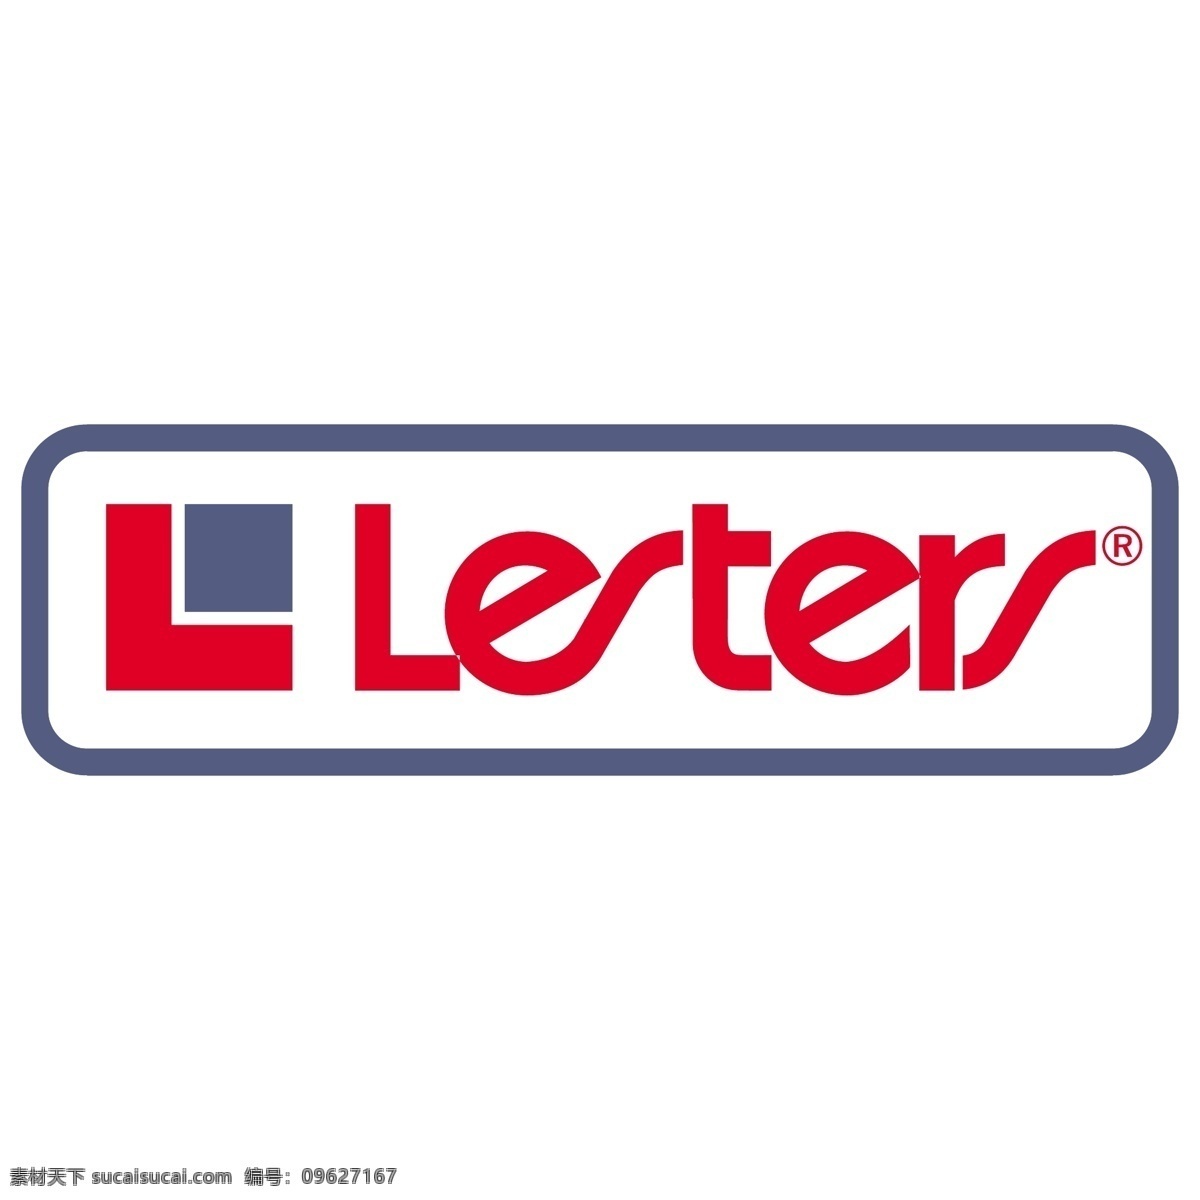 莱斯特斯 矢量标志下载 免费矢量标识 商标 品牌标识 标识 矢量 免费 品牌 公司 白色